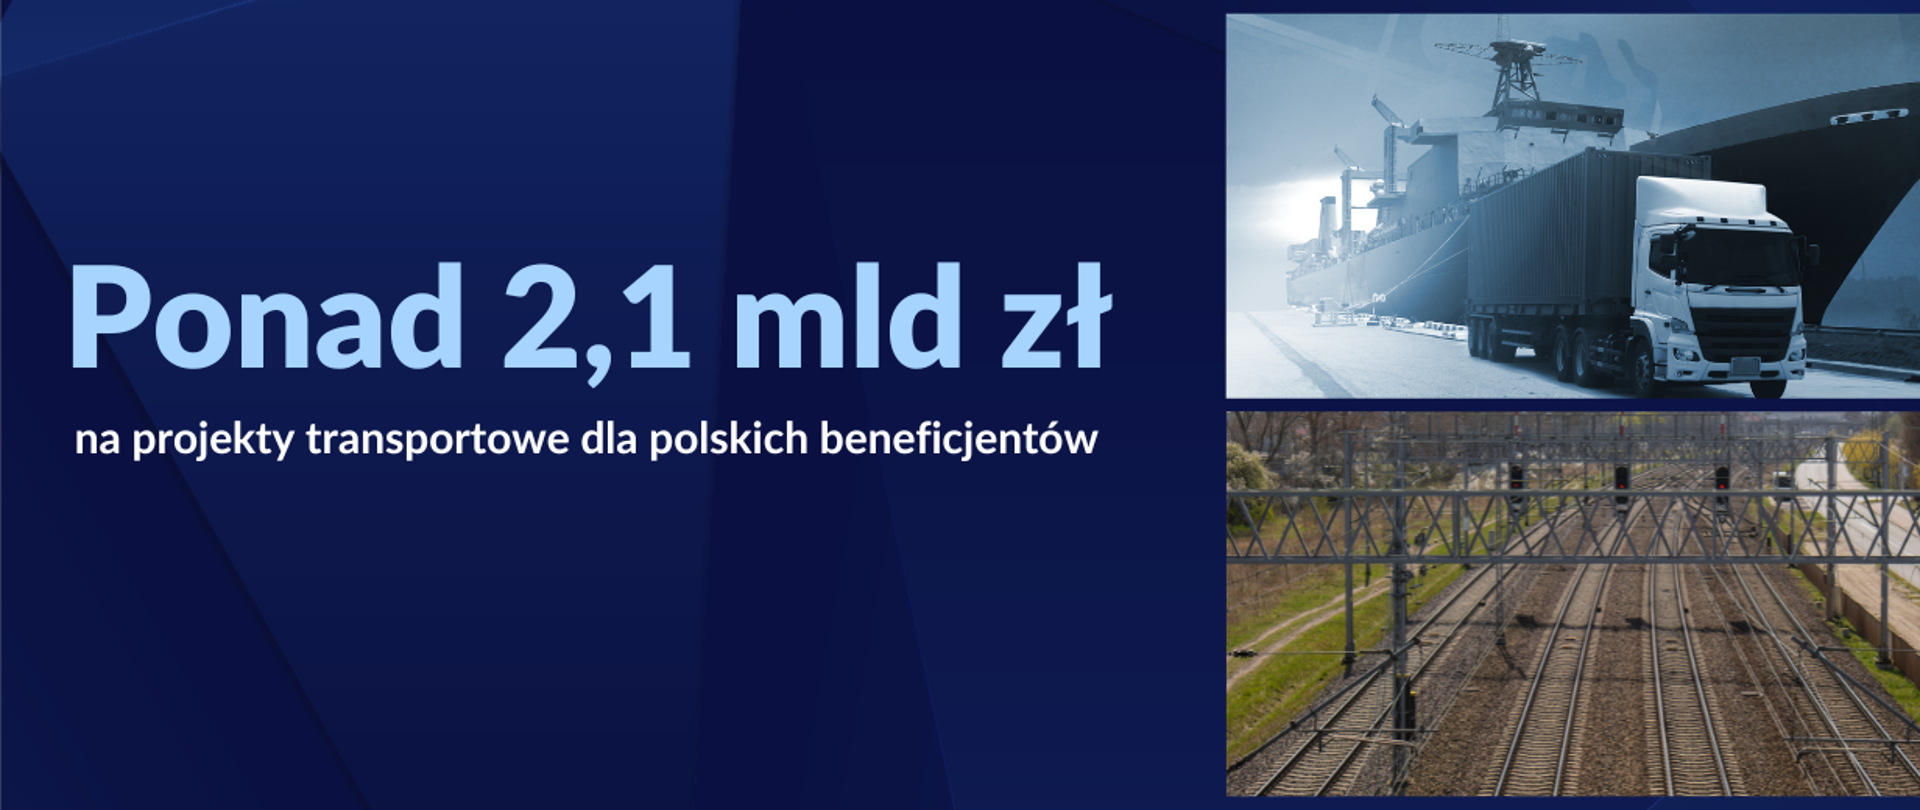 Grafika Ponad 2,1 mld zł na projekty transportowe dla polskich beneficjentów. Po prawej tory kolejowe, tir i statek.